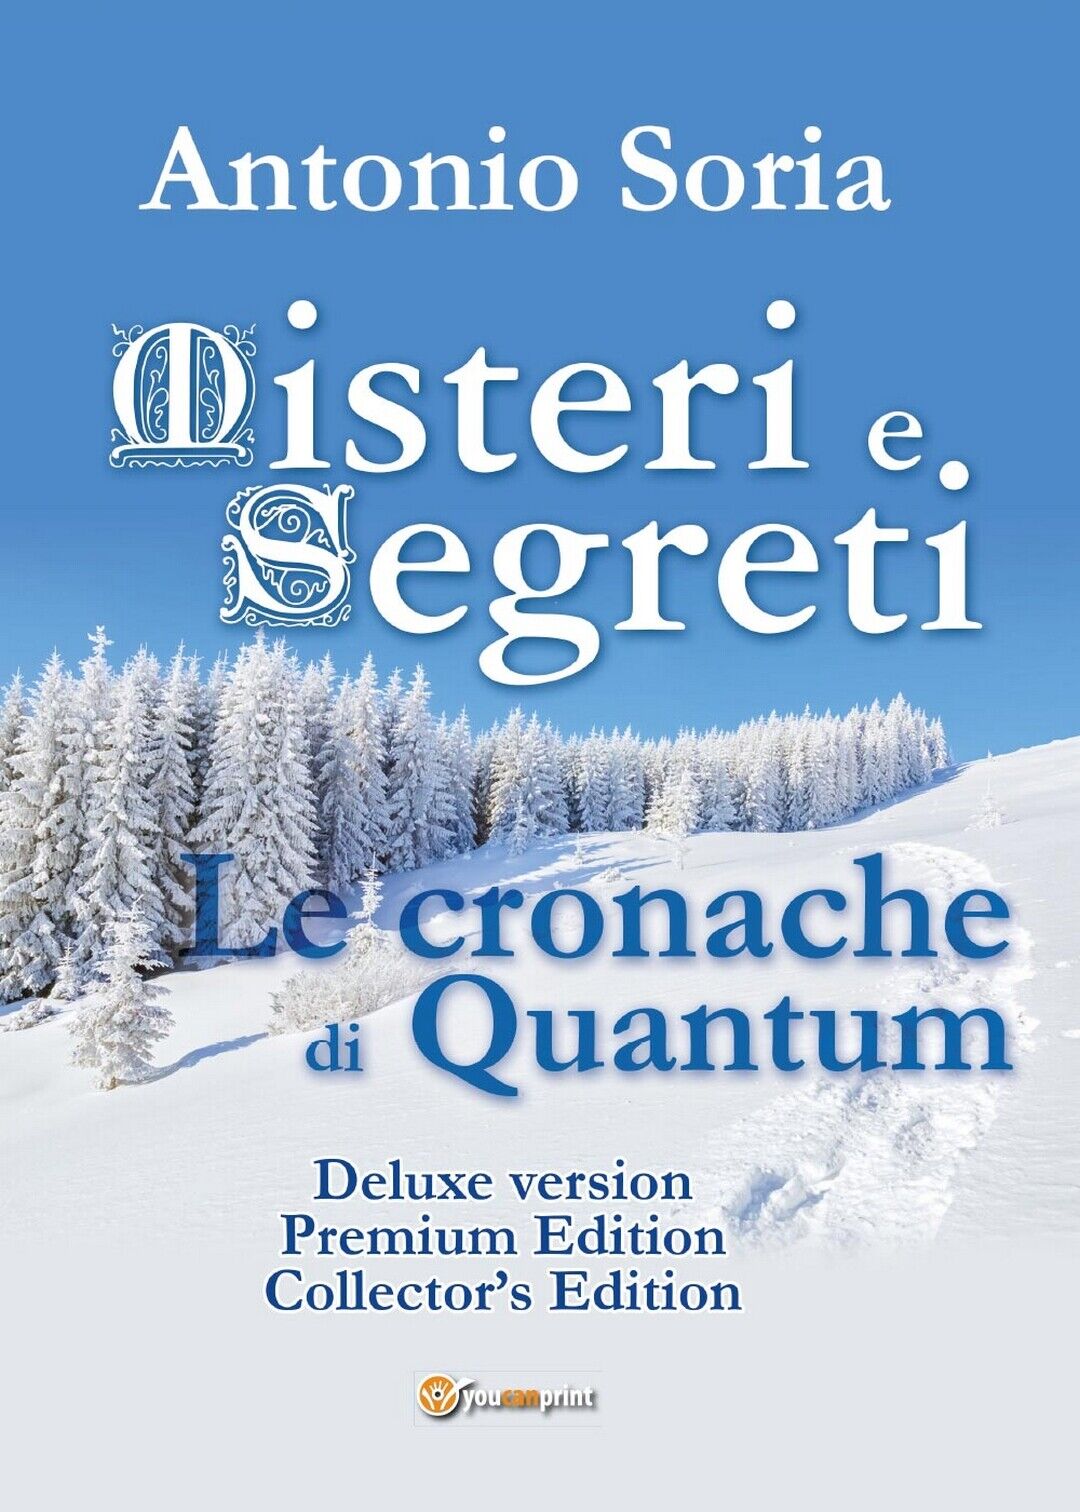 Misteri e Segreti. Le cronache di Quantum (Deluxe version) Premium Edition libro usato